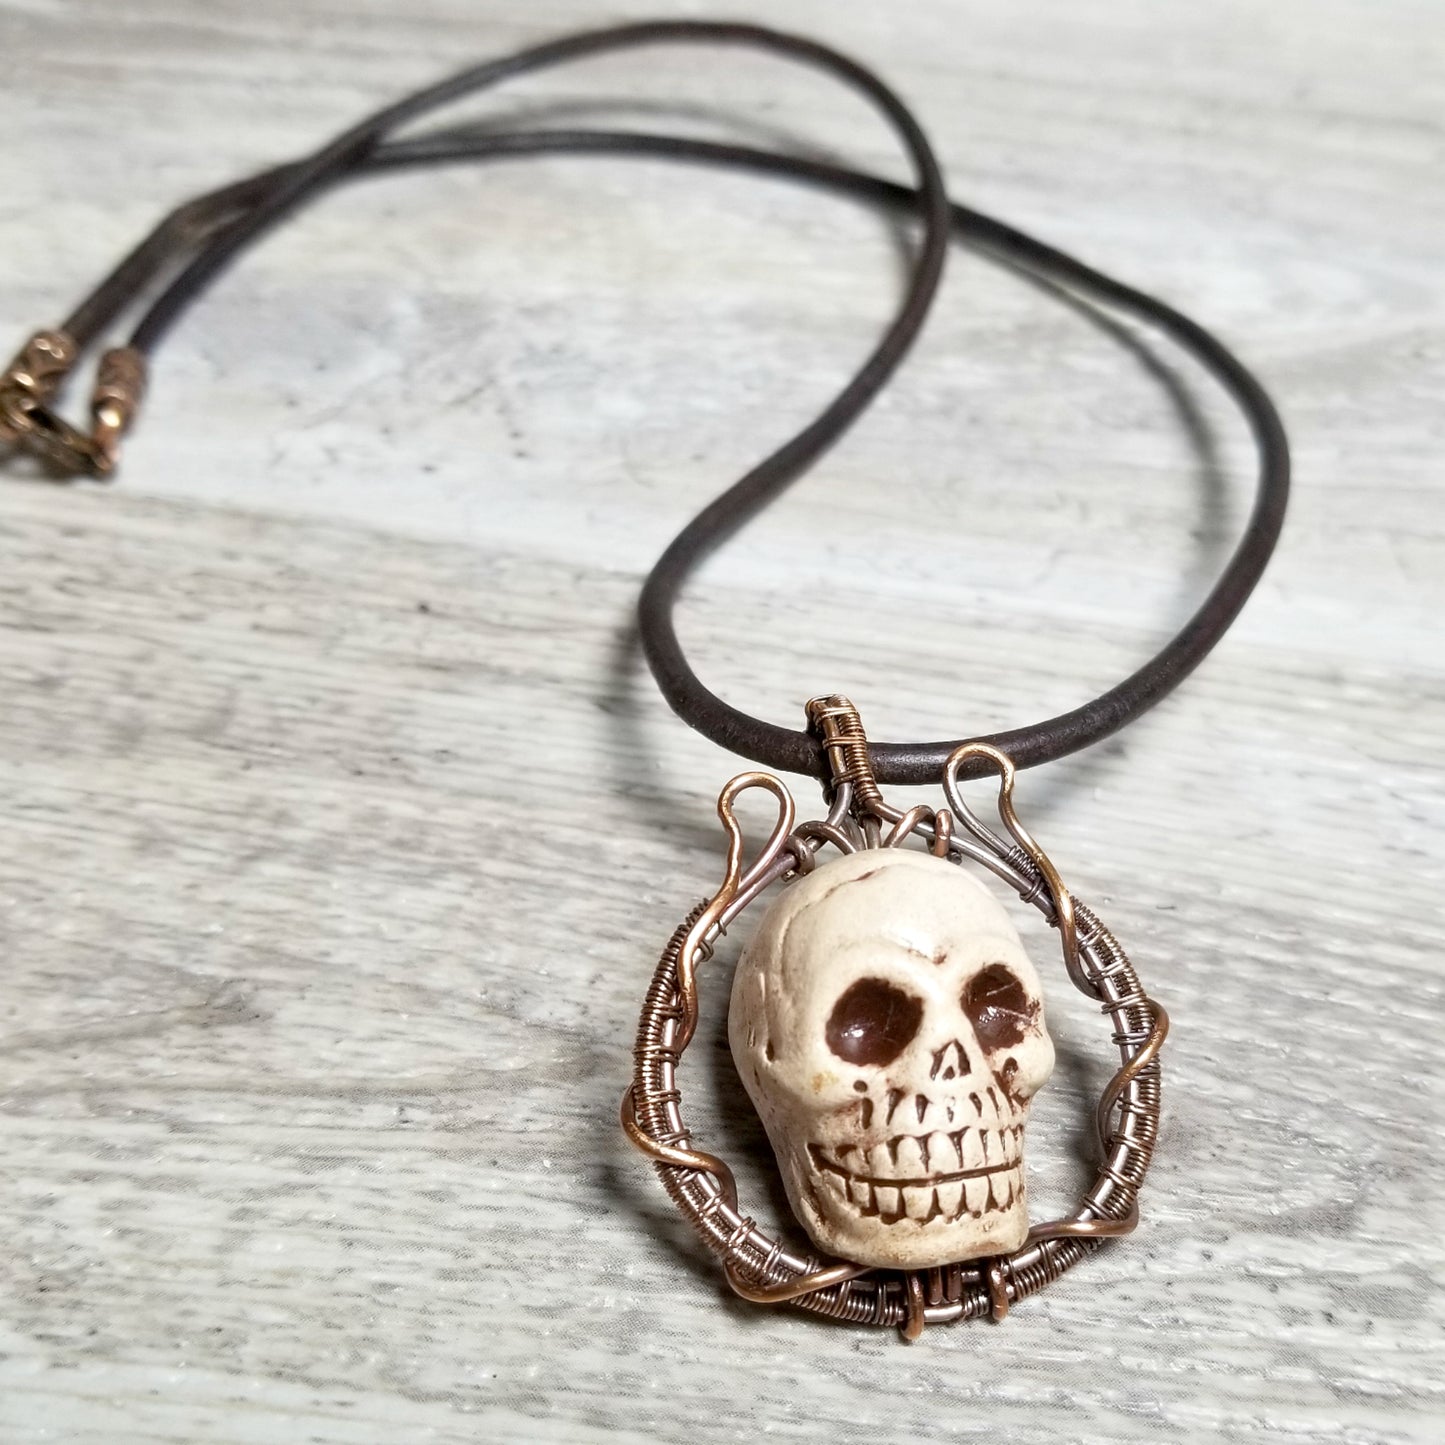 Skull Pendant, Copper Wire Skull Jewelry, Men's Necklace